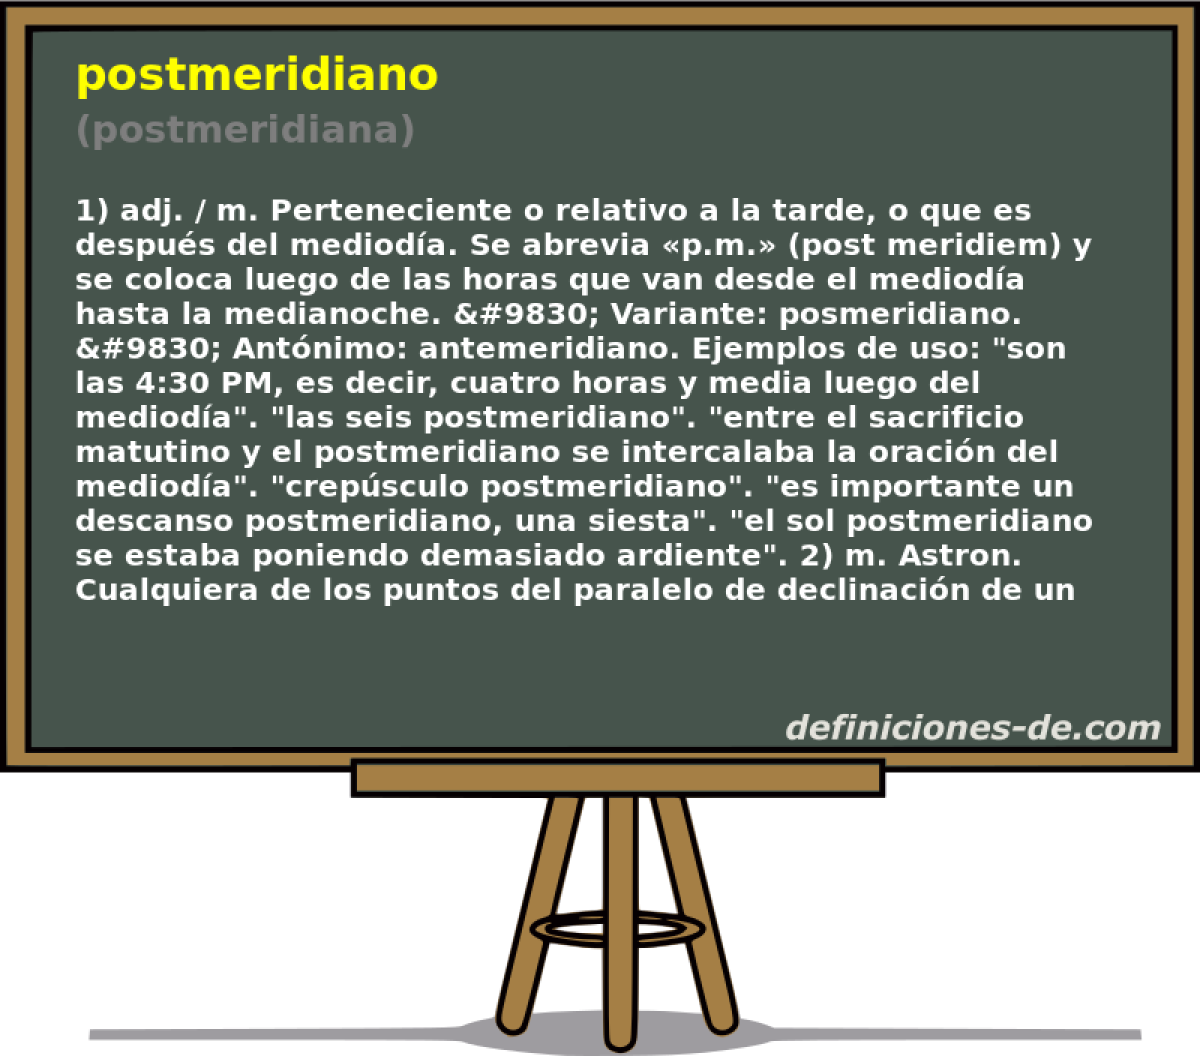 postmeridiano (postmeridiana)